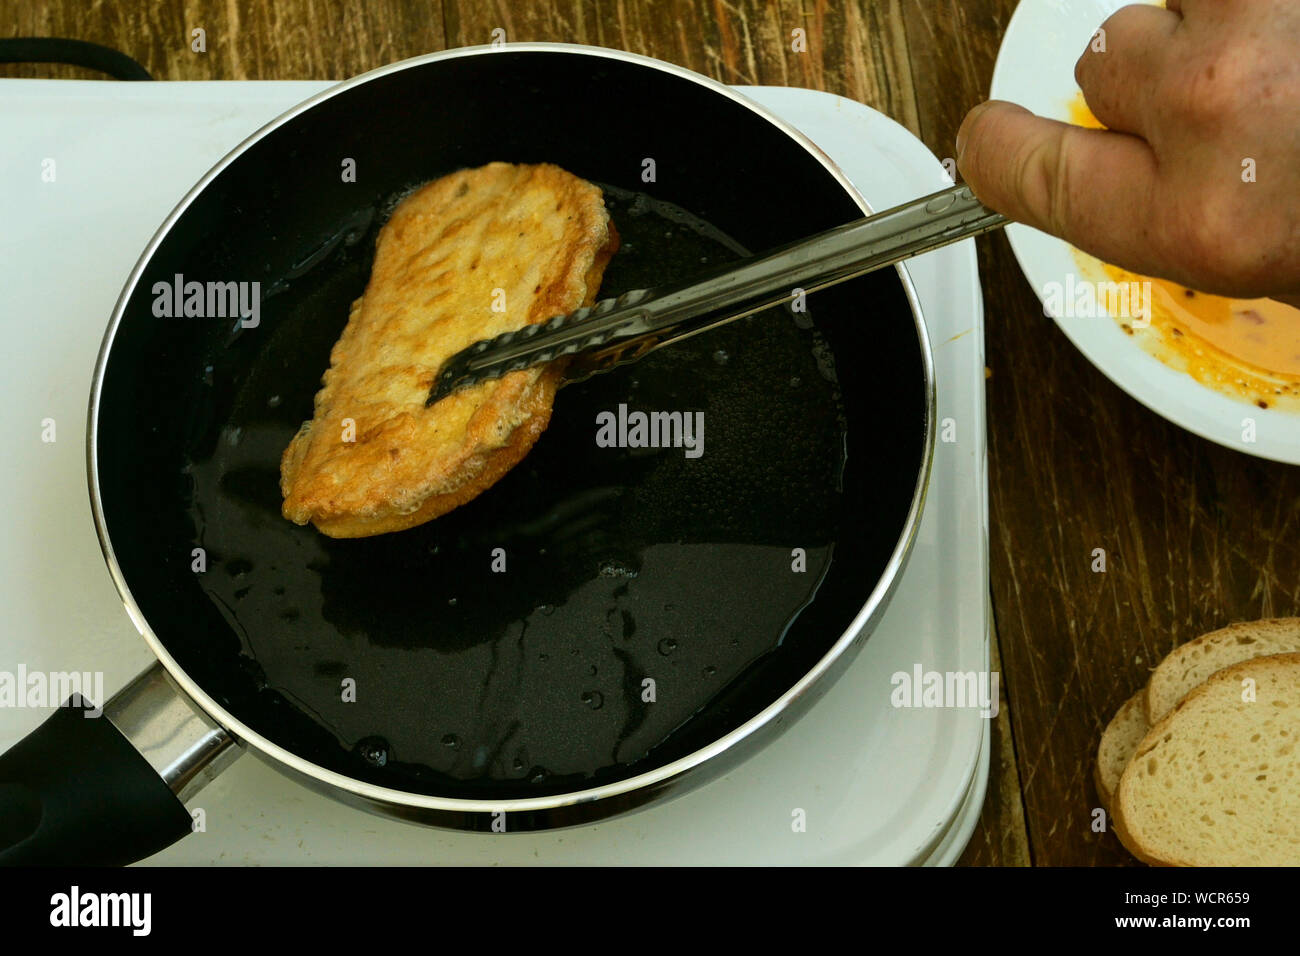 Hausgemachte Küche. Croutons oder toasts von Weißbrot, in einem geschlagen  Hühnerei getränkt, sind in der Pfanne zum Braten auf einem kleinen  elektrischen Herd gebraten. Clo Stockfotografie - Alamy